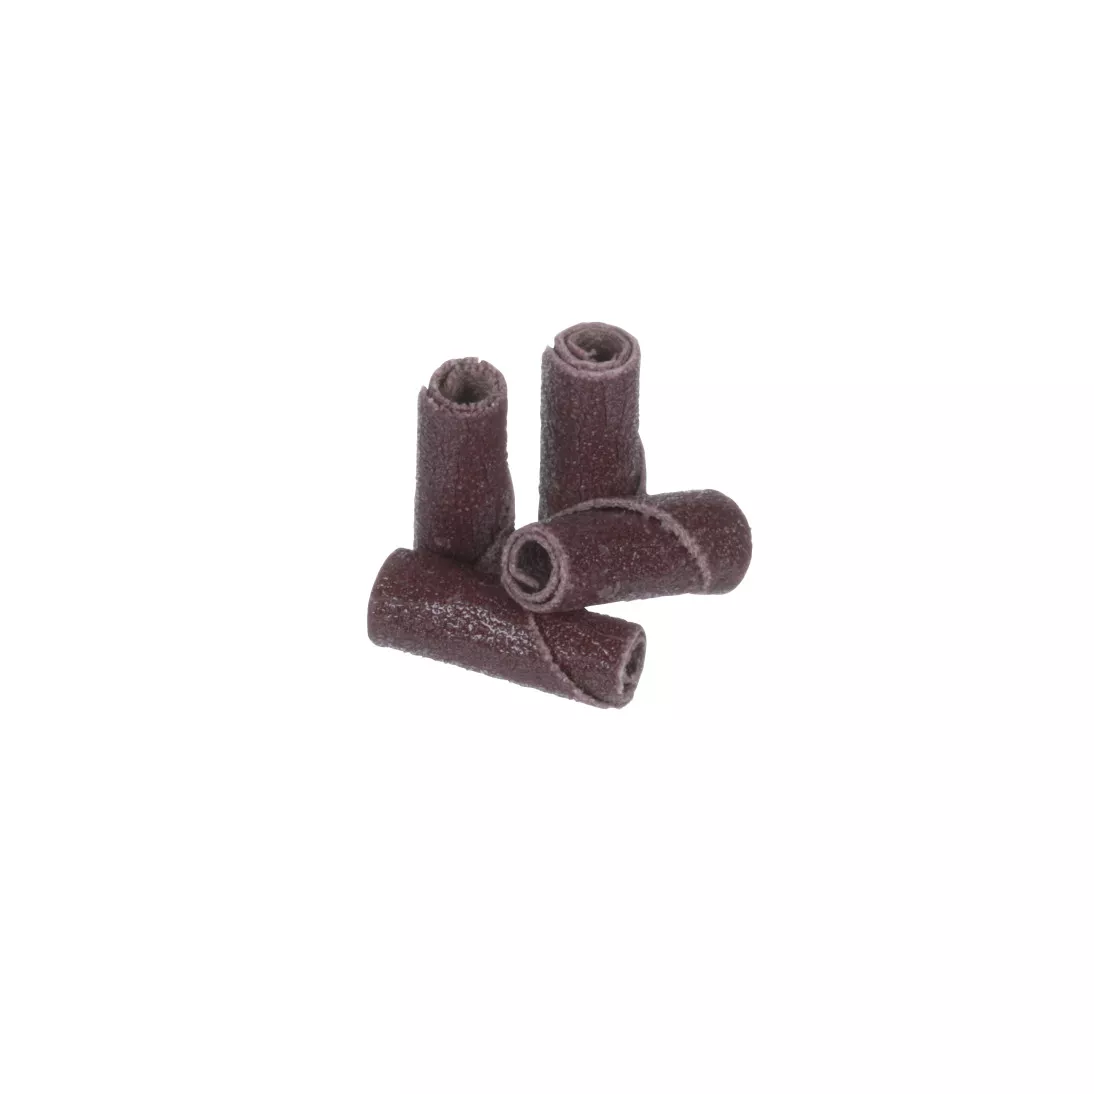 Standard Abrasives™ A/O Straight Cartridge Roll 701566, 1/4 in x 3/4 in
x 1/8 in 120, 100 ea/Case